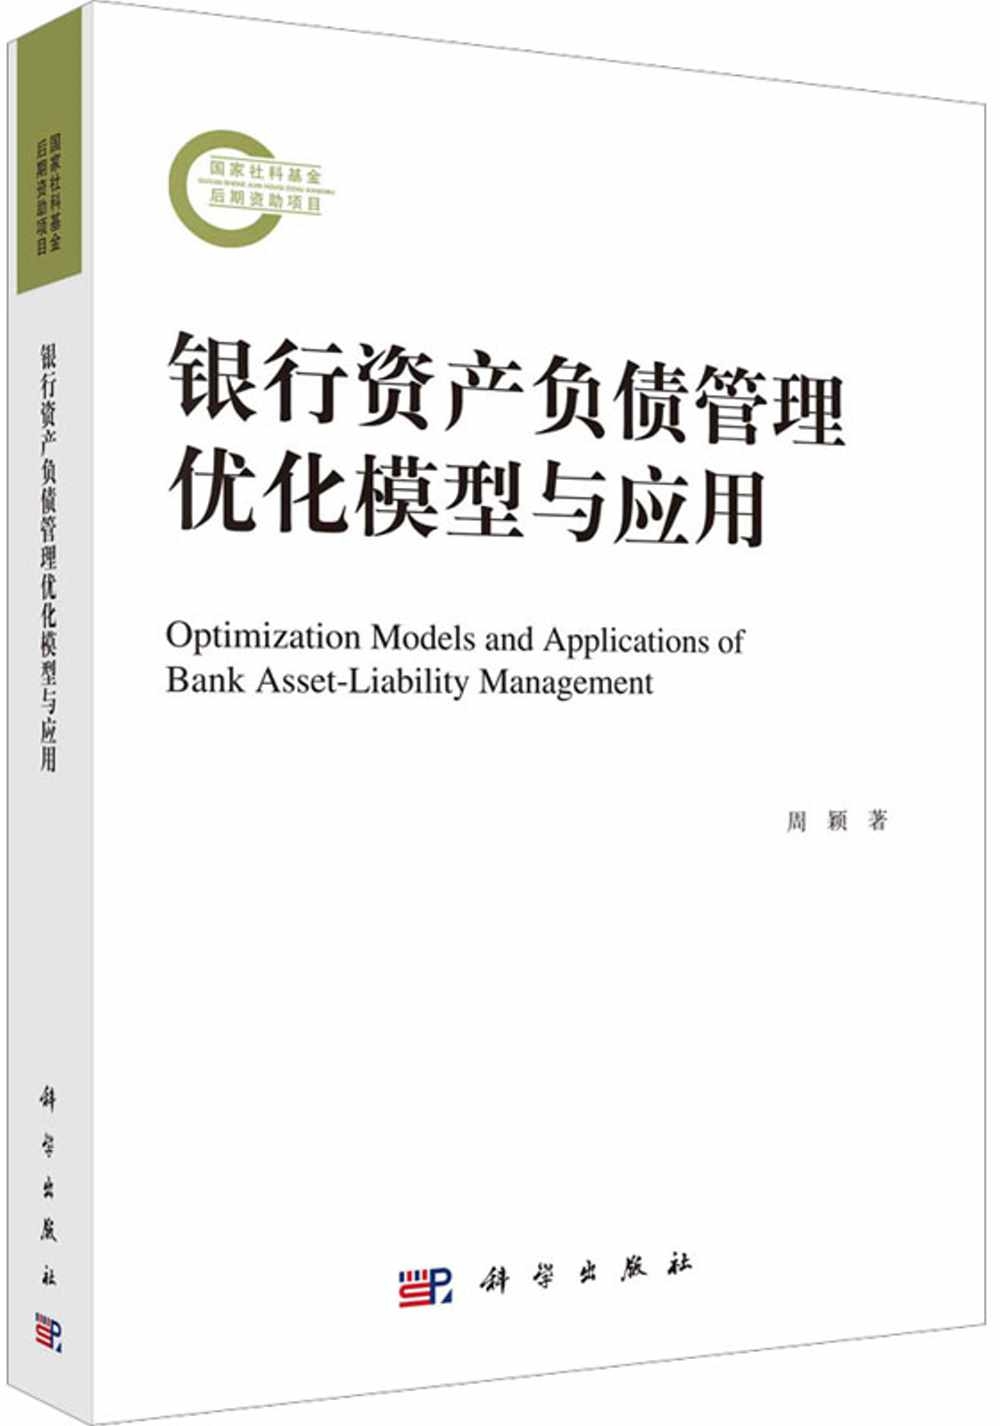 銀行資產負債管理優化模型與應用